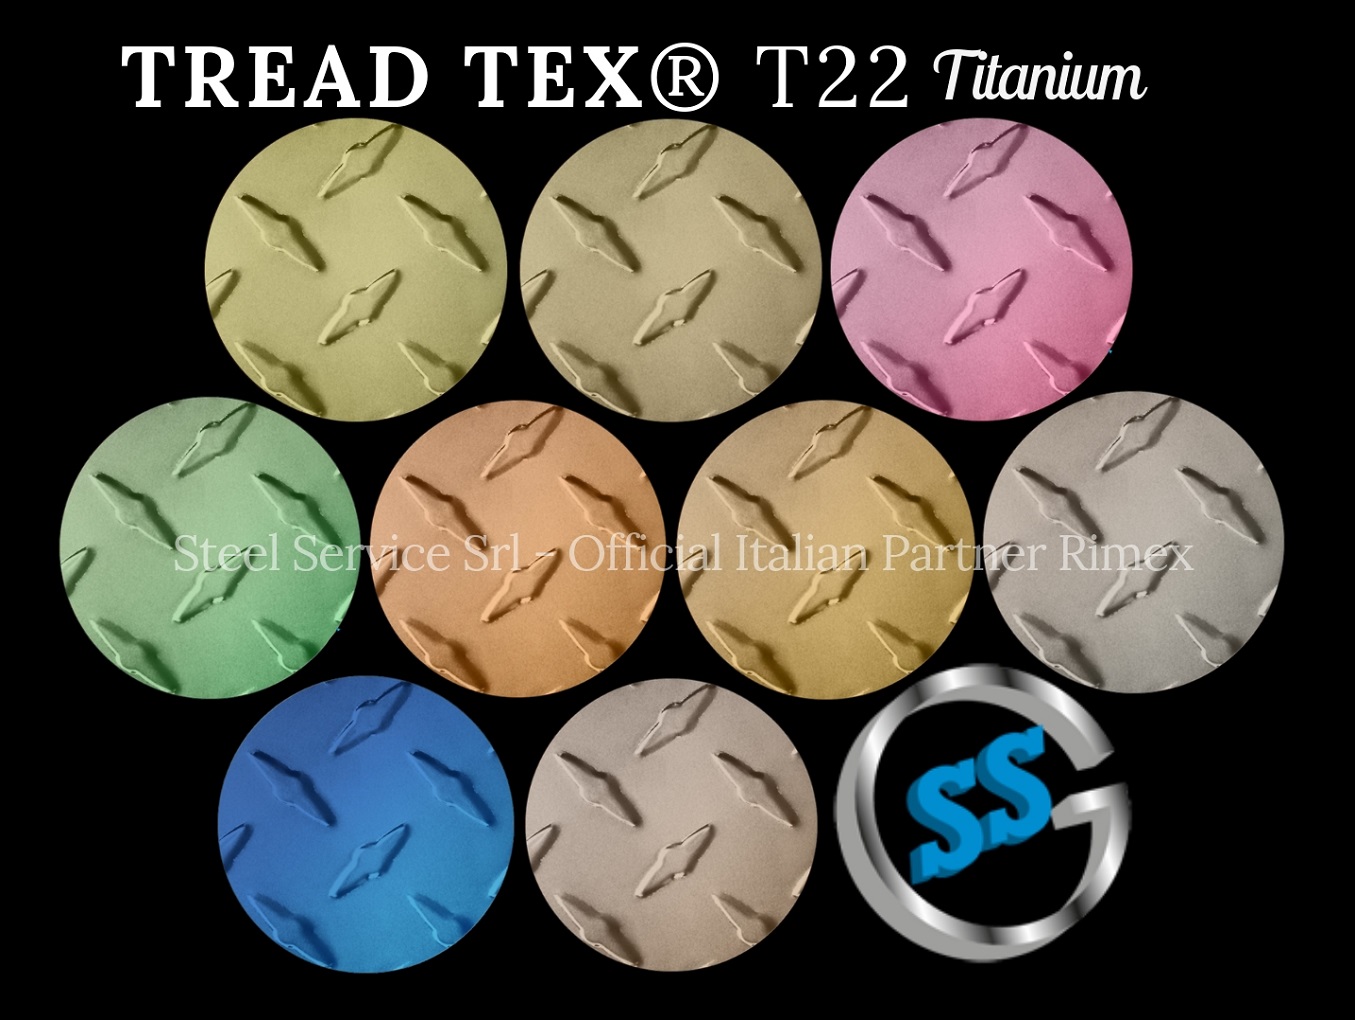 Lamiere bugnate colorate, Palette varianti colorate inox T22 Titanium delle lamiere inox TREADTEX, inox rigidizzato TREADTEX, inox bugnato TREADTEX, inox mandorlato antiscivolo